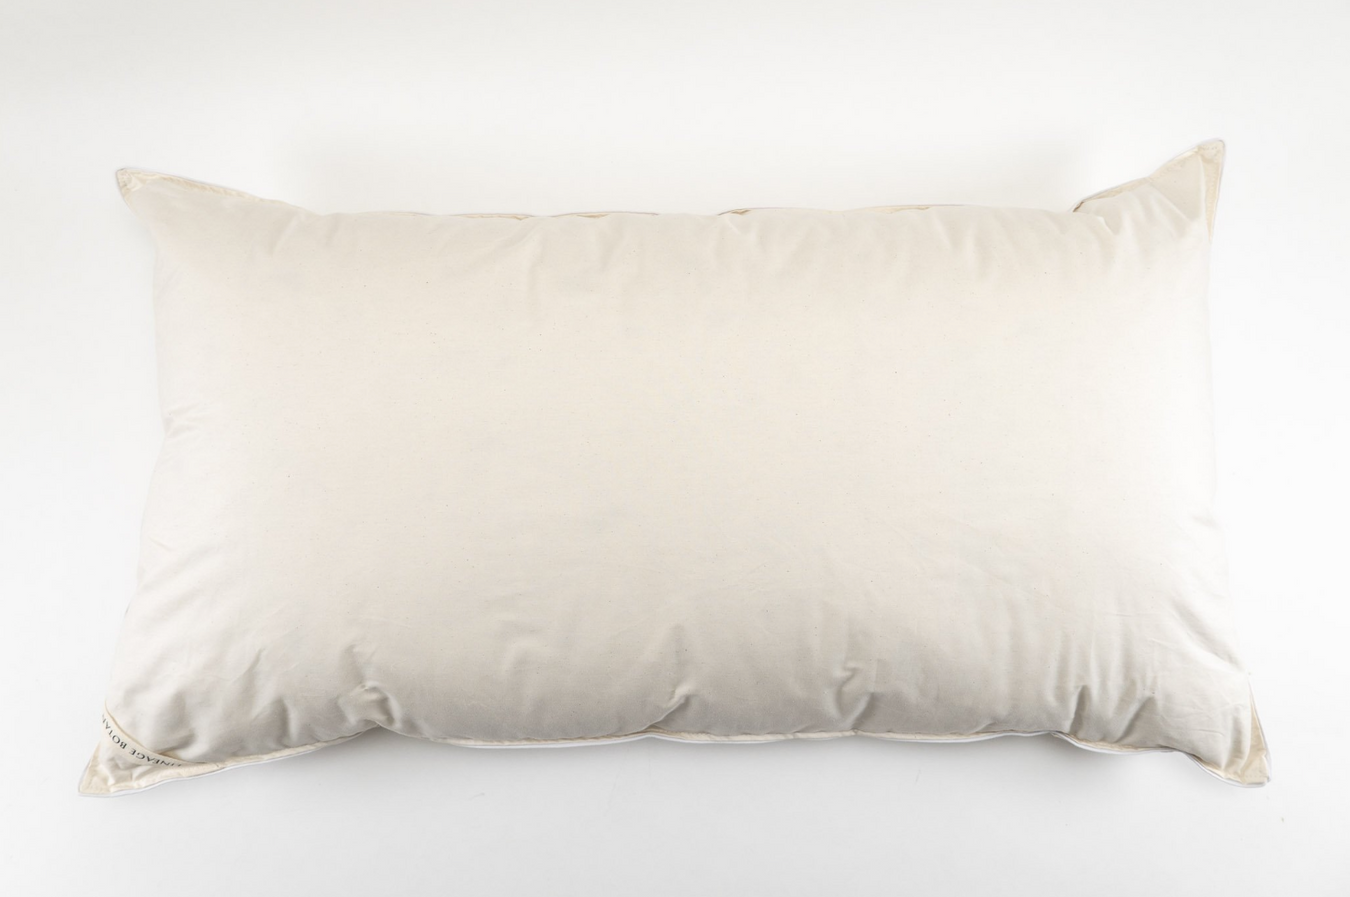 Bedding Pillows